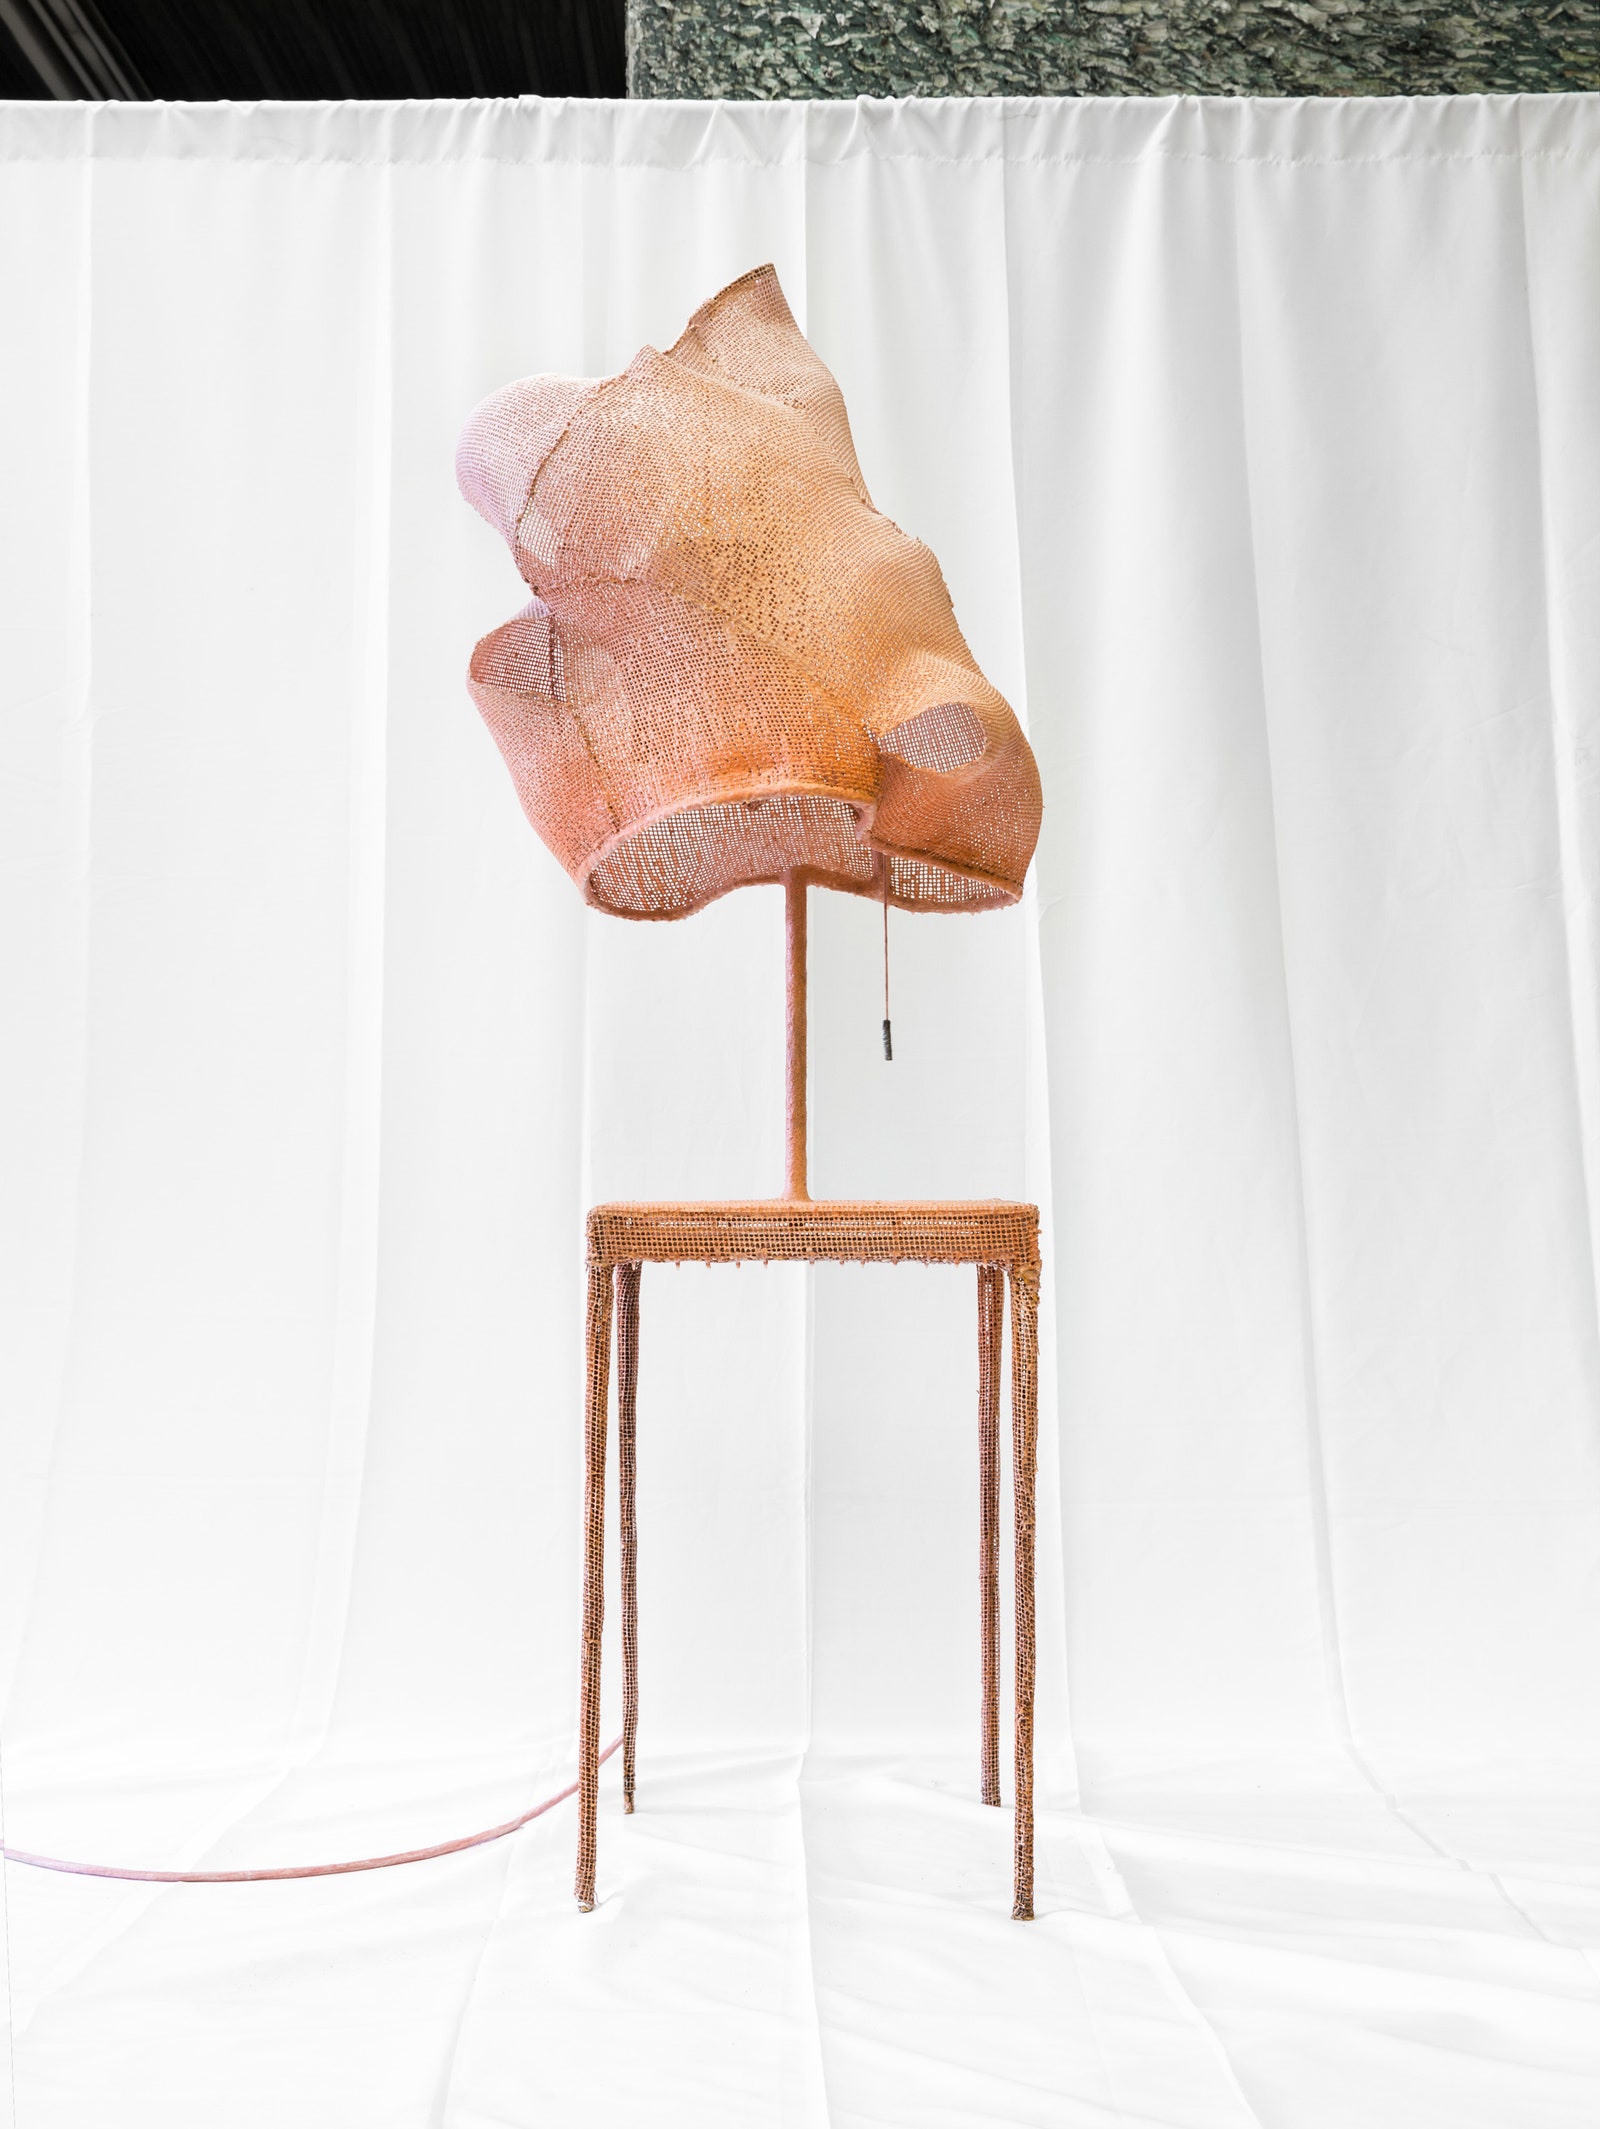 Начо Карбонелл стол Cocoon 8 2015. Работа принадлежит Carpenters Workshop Gallery.